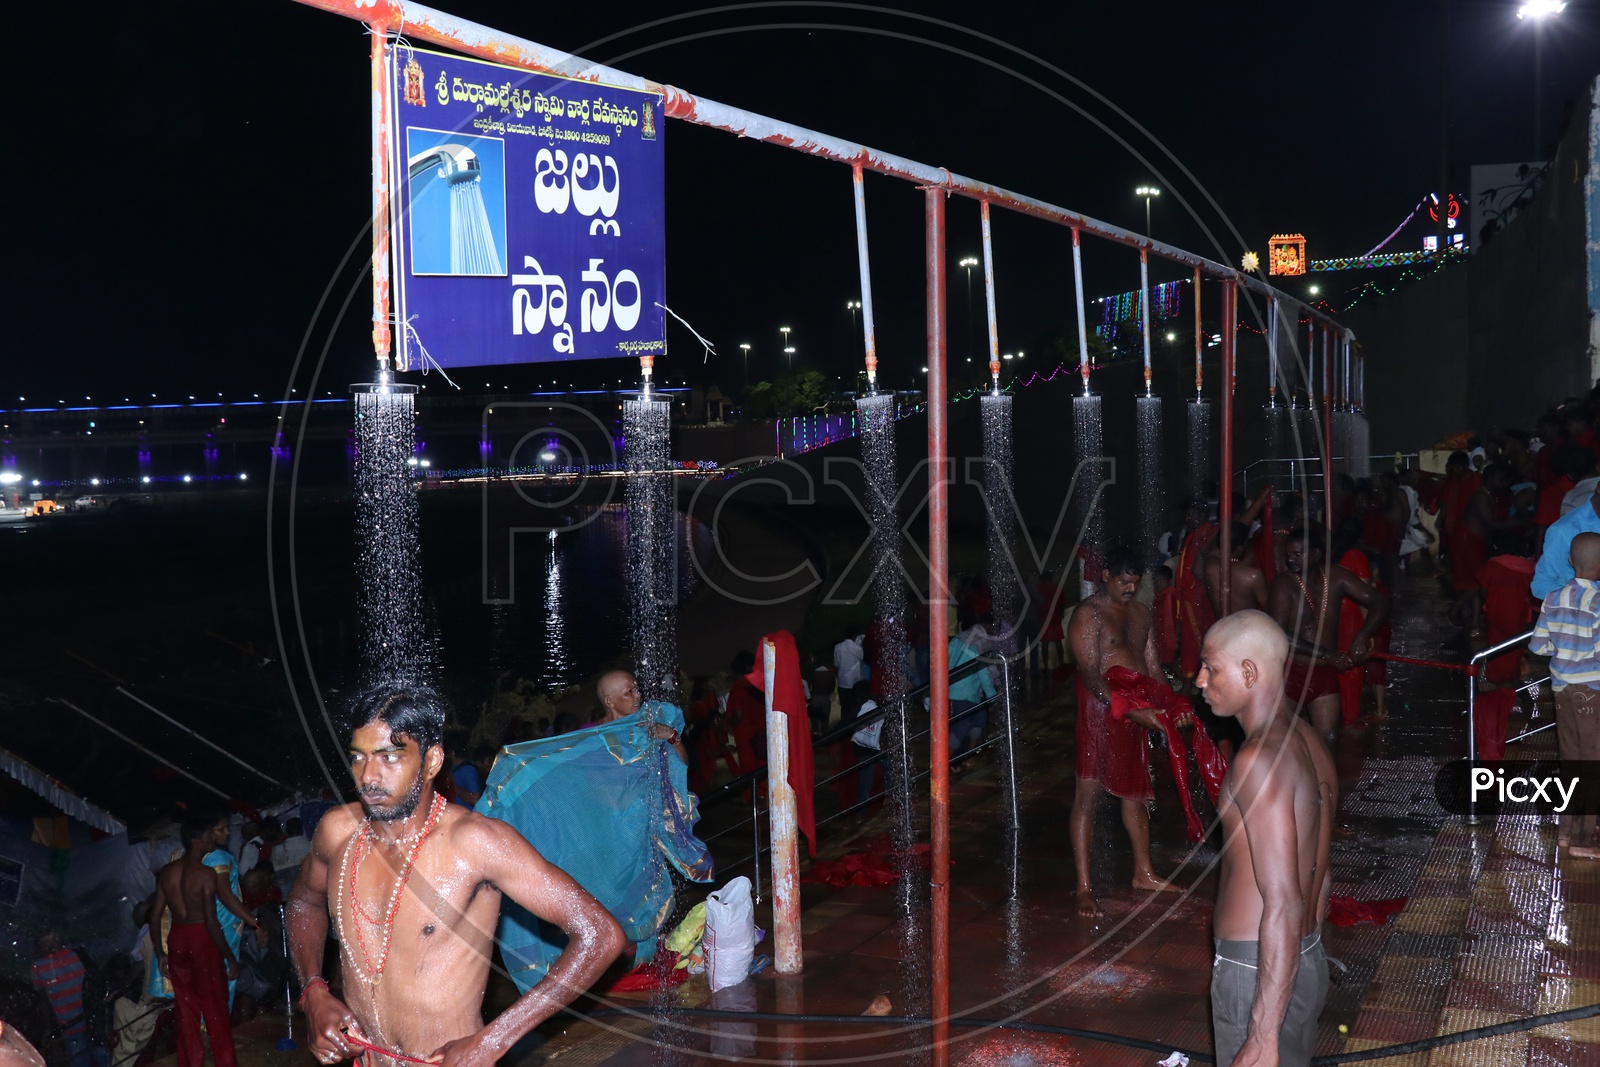 Pilgrims bathing at Krishnaveni ghat on 9th day of Durga Navrathri's uring Dasara/Dussehra